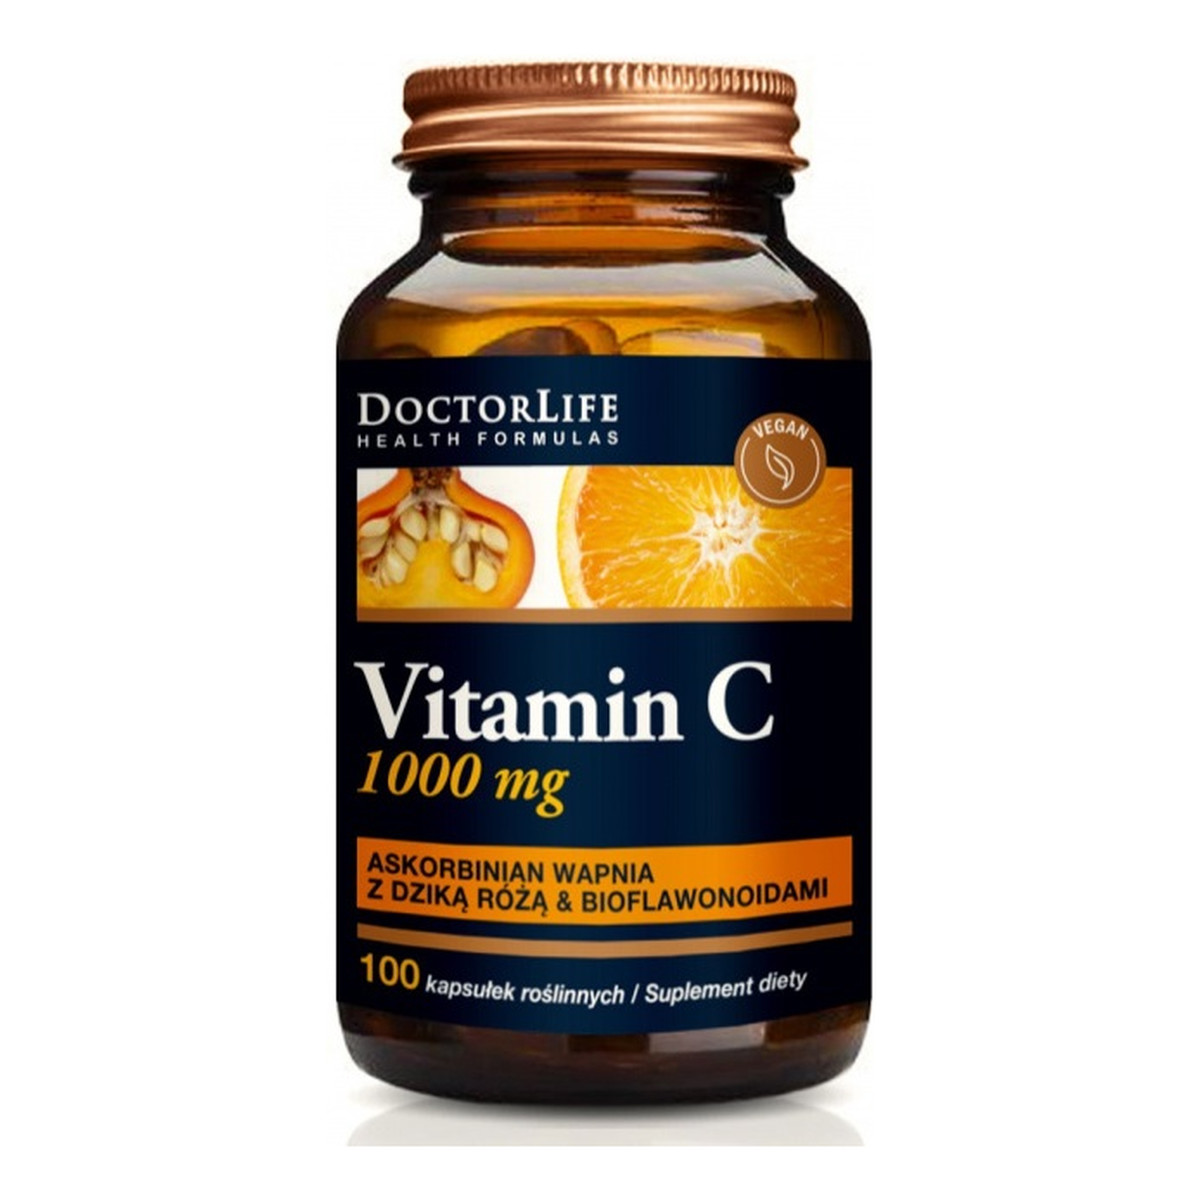 Doctor Life Vitamin c buffered vitamin c buforowana witamina c 1000mg suplement diety dzika róża & bioflawonoida 100 kapsułek